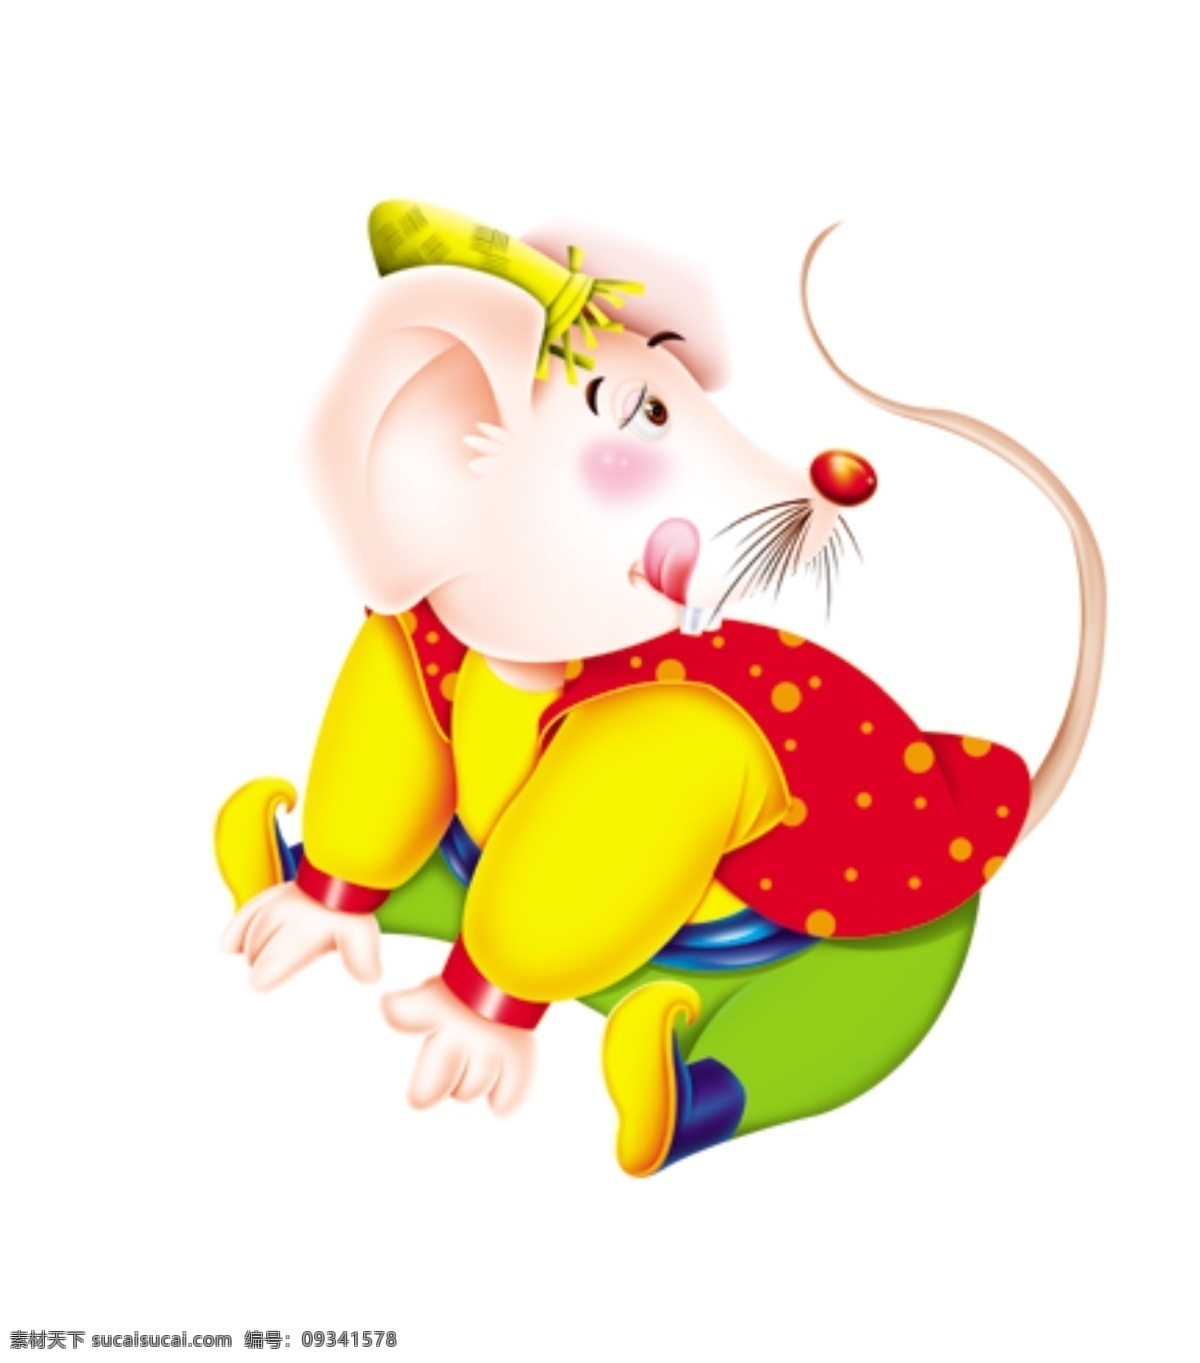 卡通鼠 矢量鼠年形像 文化艺术 节日庆祝 psd素材 矢量卡通鼠 源文件库